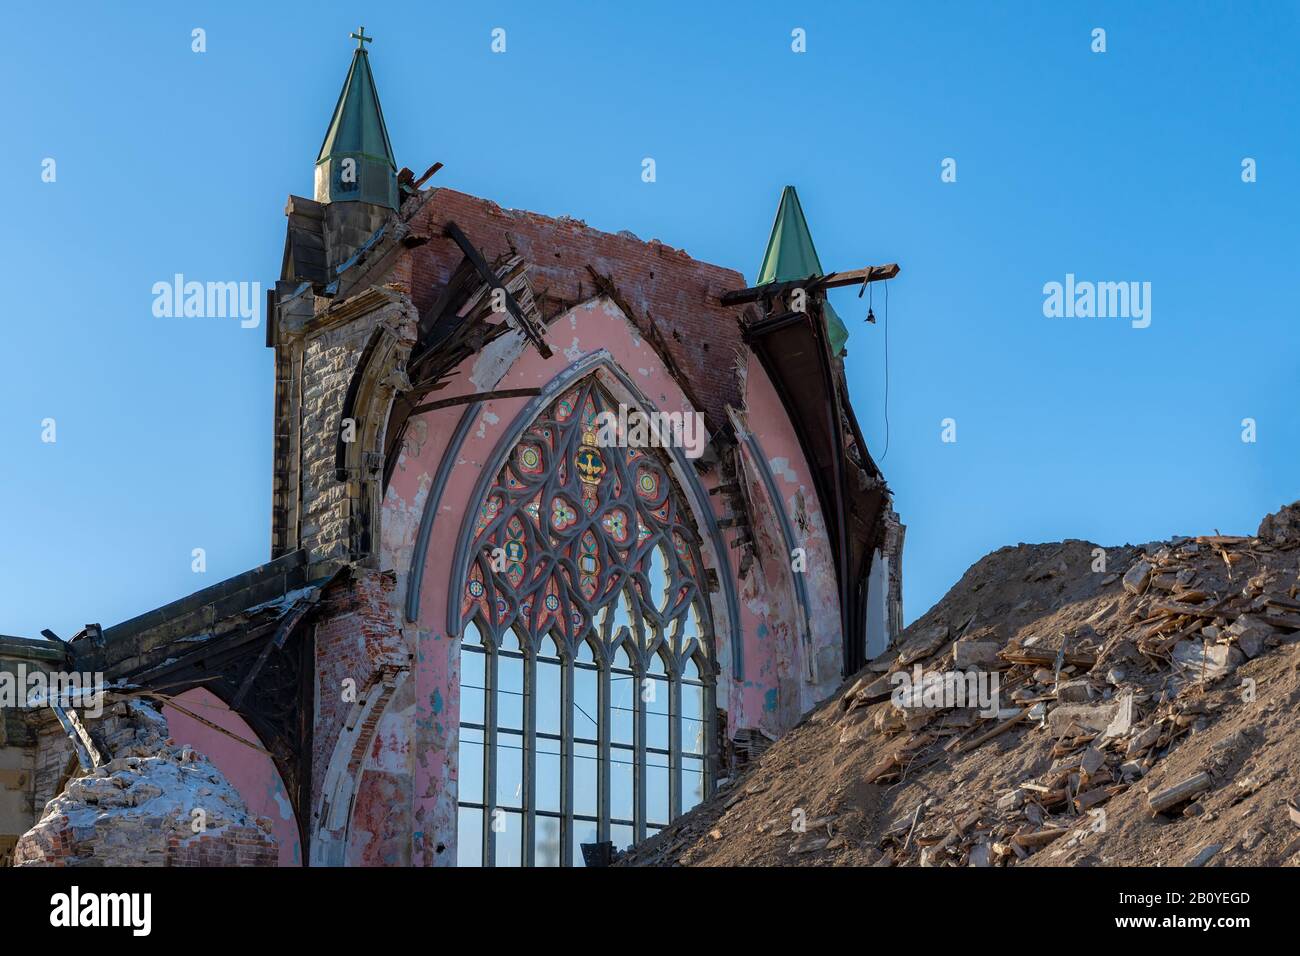 Die Ruinen einer großen gotischen Kirche. Es bleibt nur noch eine Wand, es hat oben ein großes Fenster mit Glasflecken. Großer Trümmerhaufen davor. Sonnig d Stockfoto